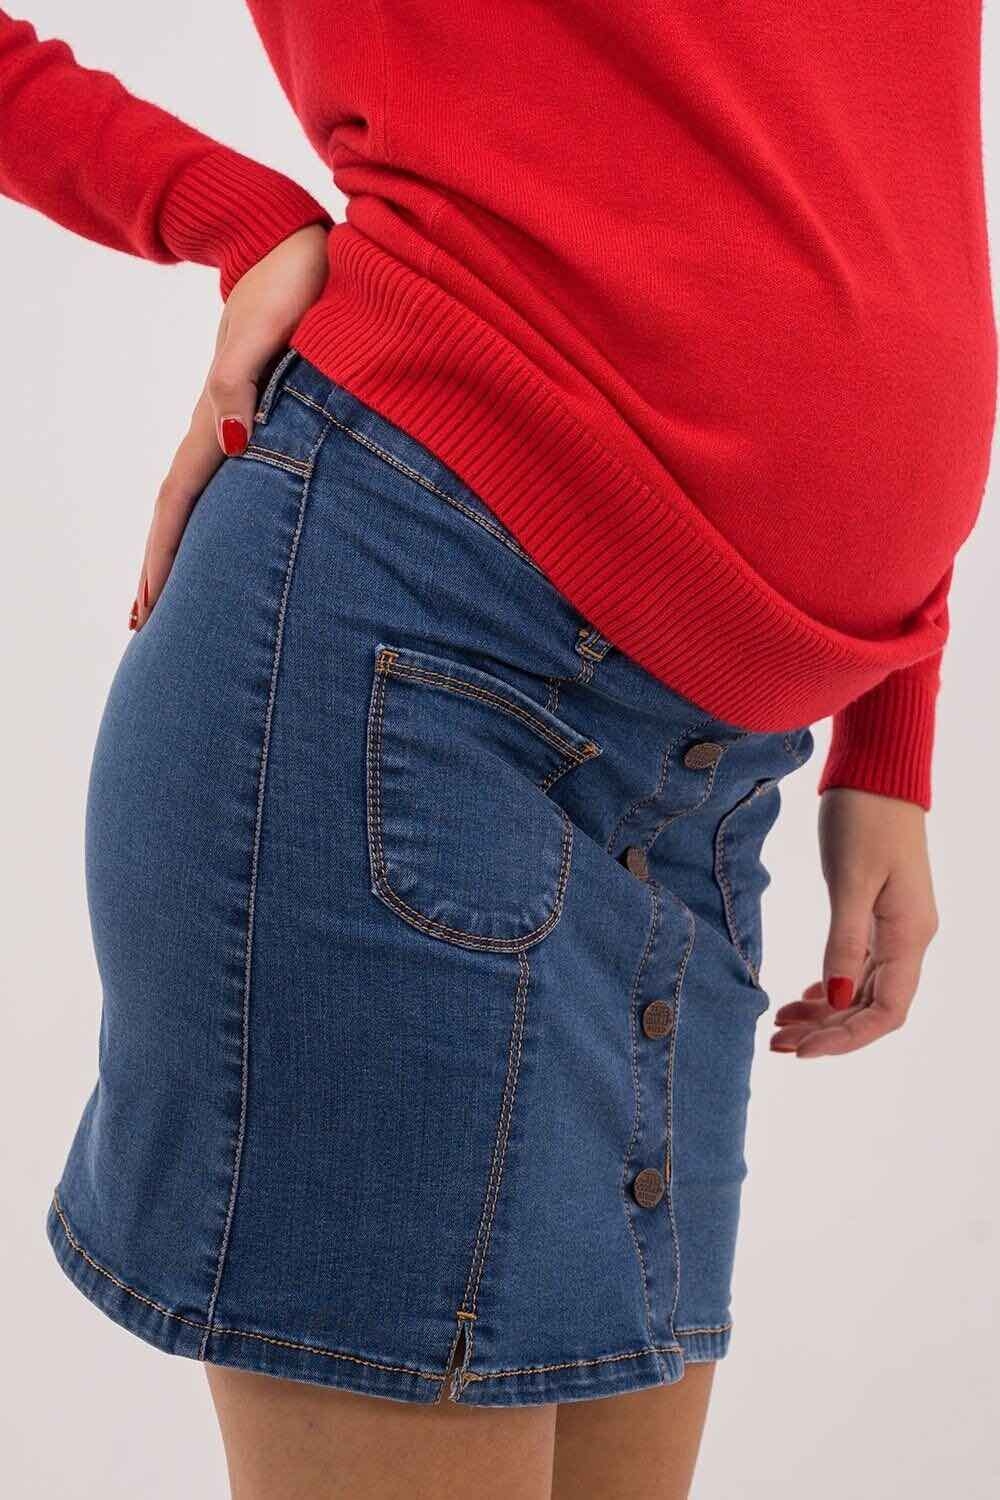 Спідниця джинсова для вагітних, майбутніх мам Синя варка 0